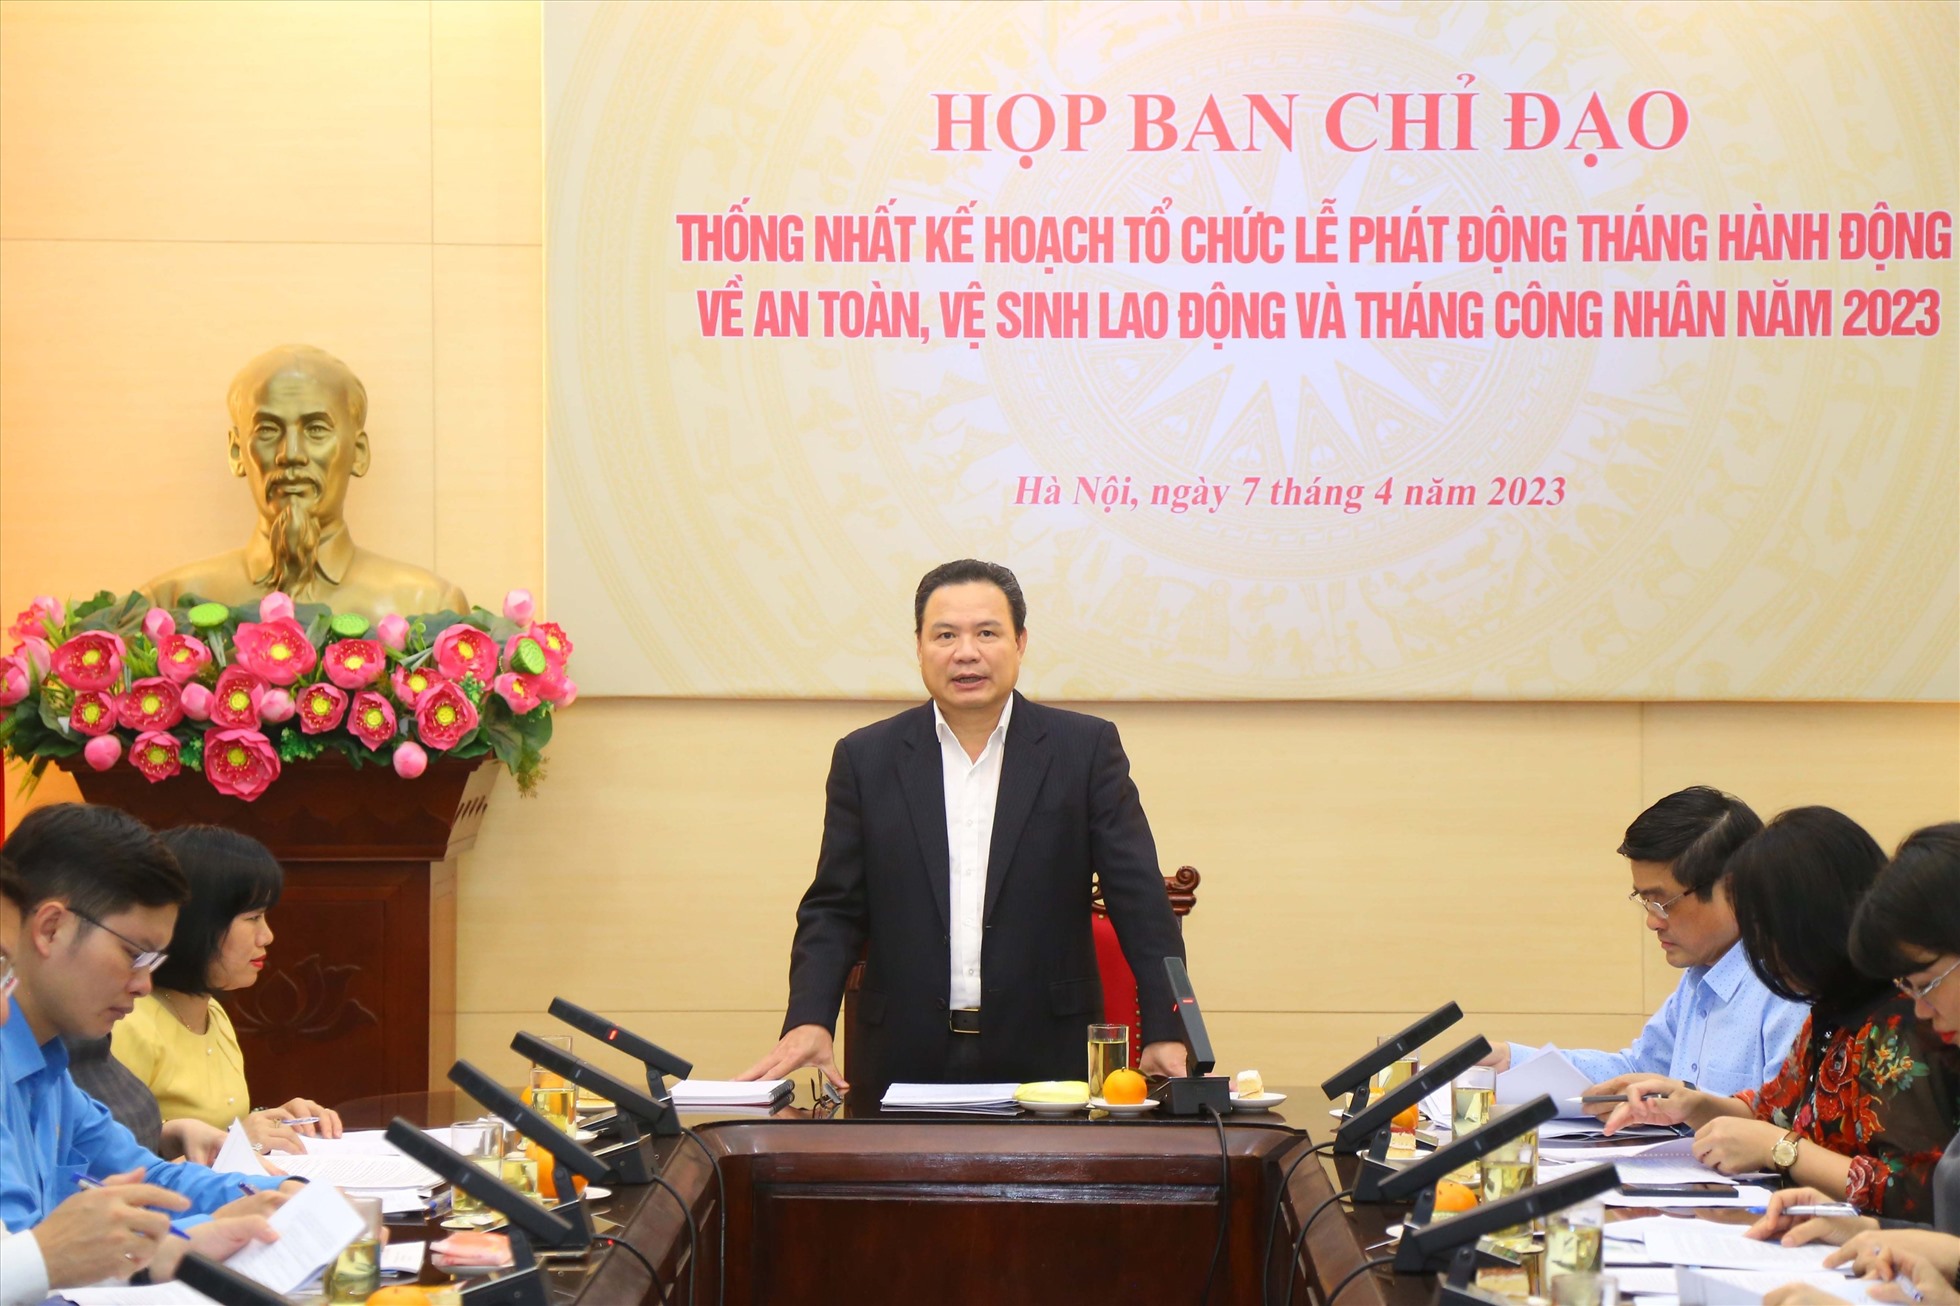 Thứ trưởng Lê Văn Thanh, Phó trưởng Ban Chỉ đạo Tháng hành động về ATVSLĐ Trung ương chủ trì và phát biểu tại cuộc họp. Ảnh: Bộ LĐTBXH.